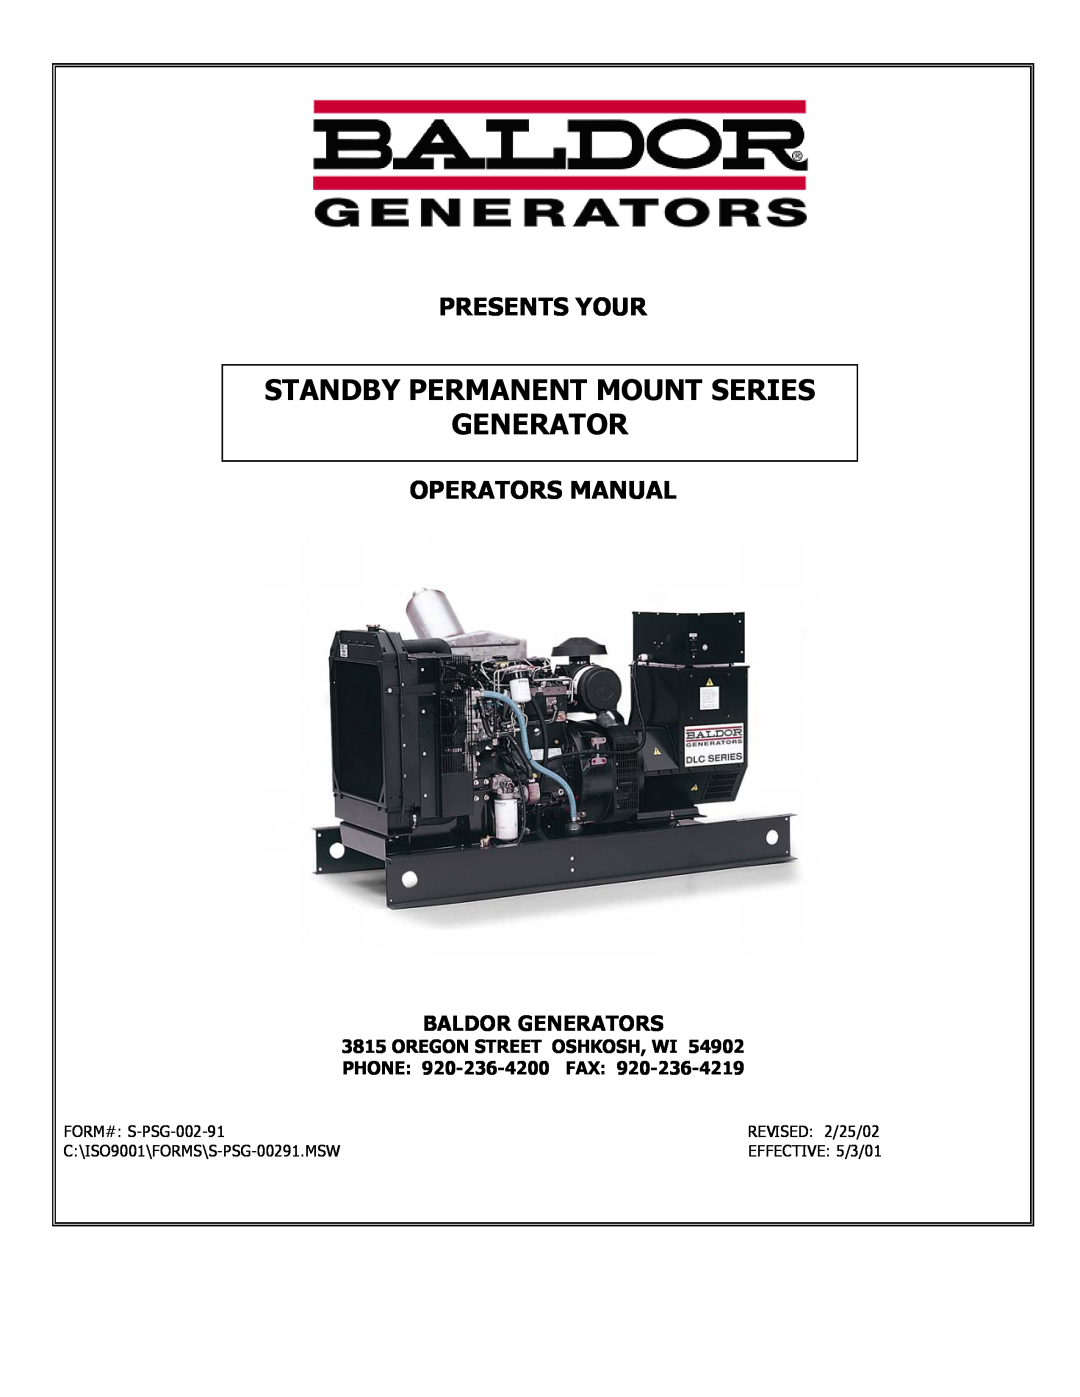 Baldor ISO9001 manual Presents Your, Operators Manual, Baldor Generators, Standby Permanent Mount Series Generator 